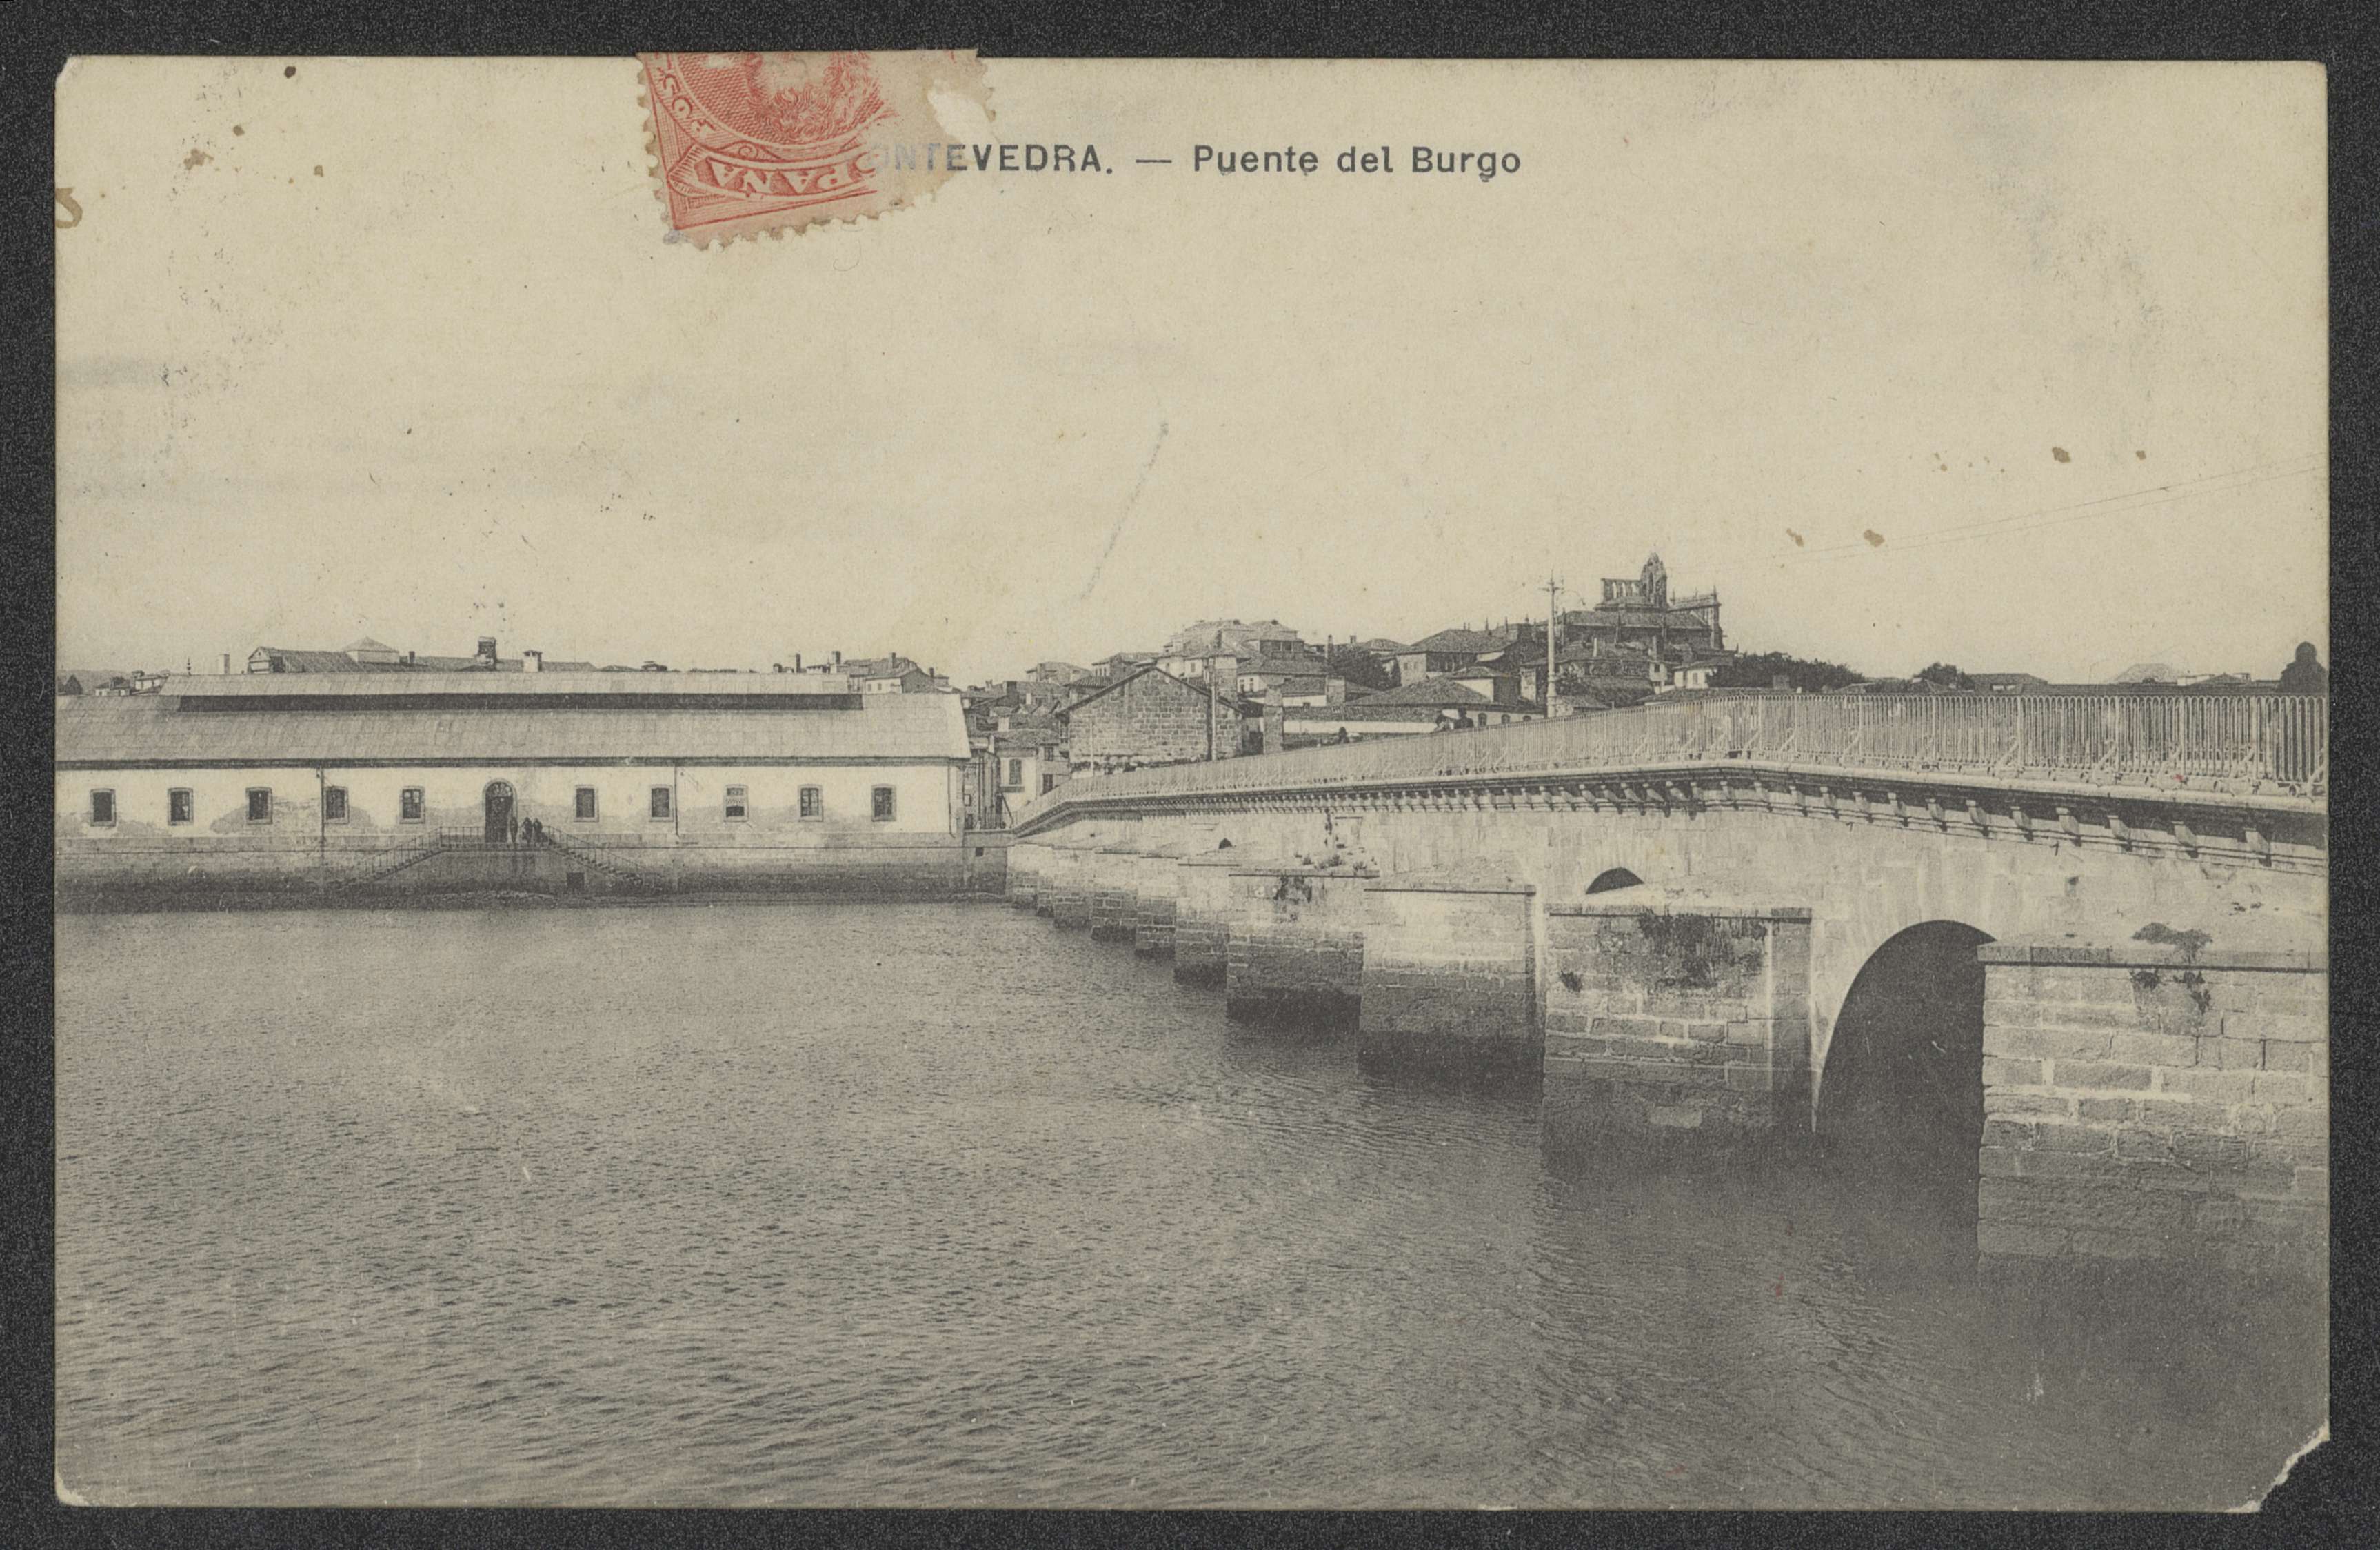 Pontevedra: Puente del Burgo, ca. 1910